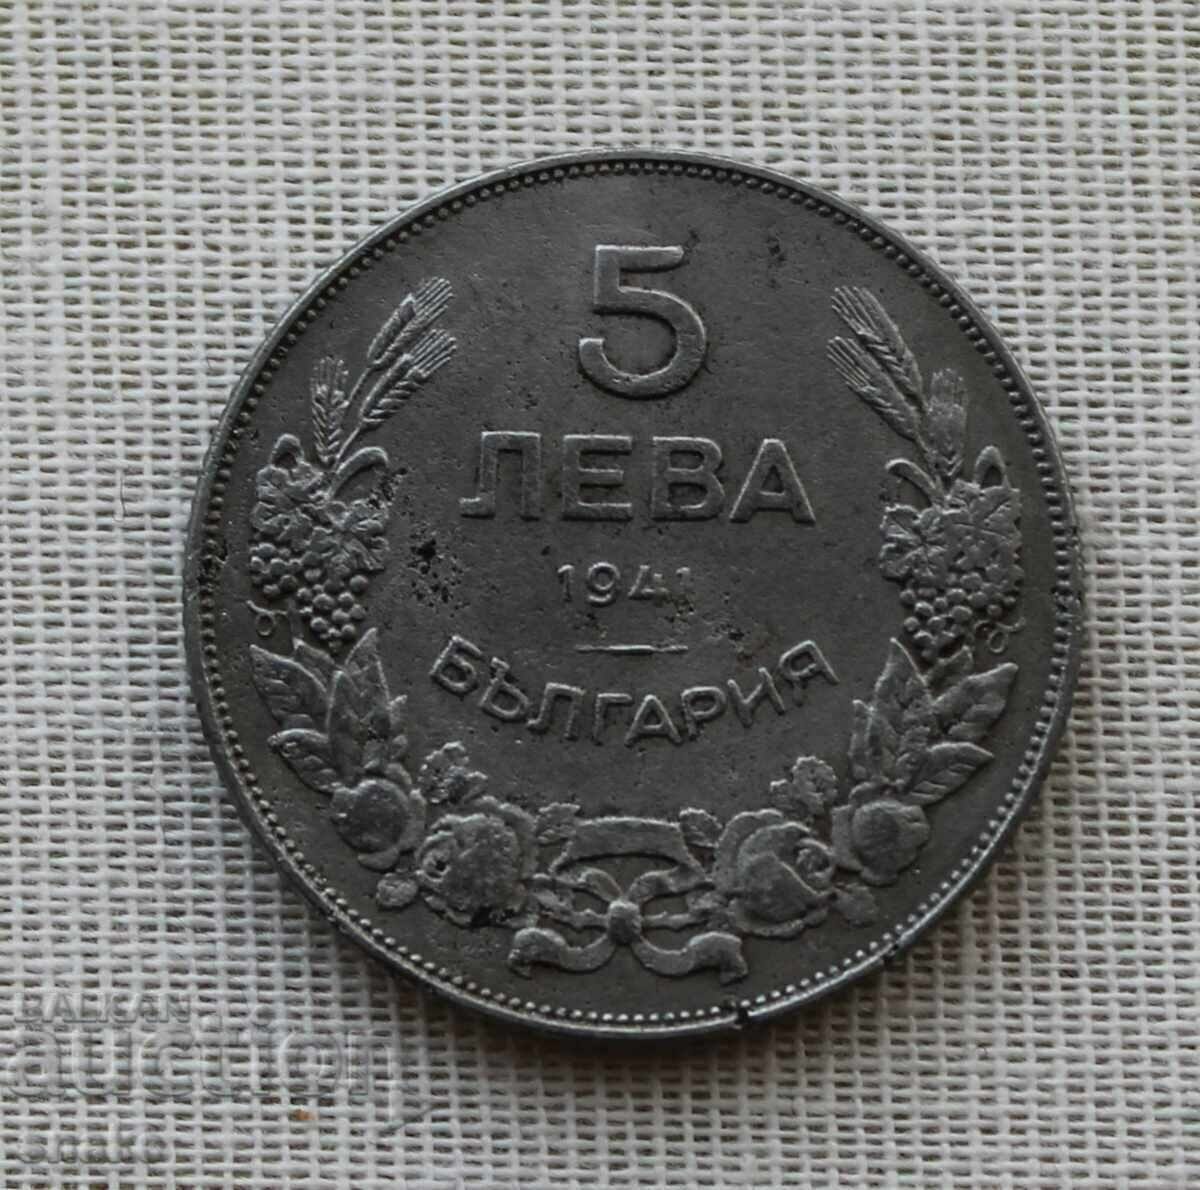 Bulgaria 5 BGN 1941 Top coin.